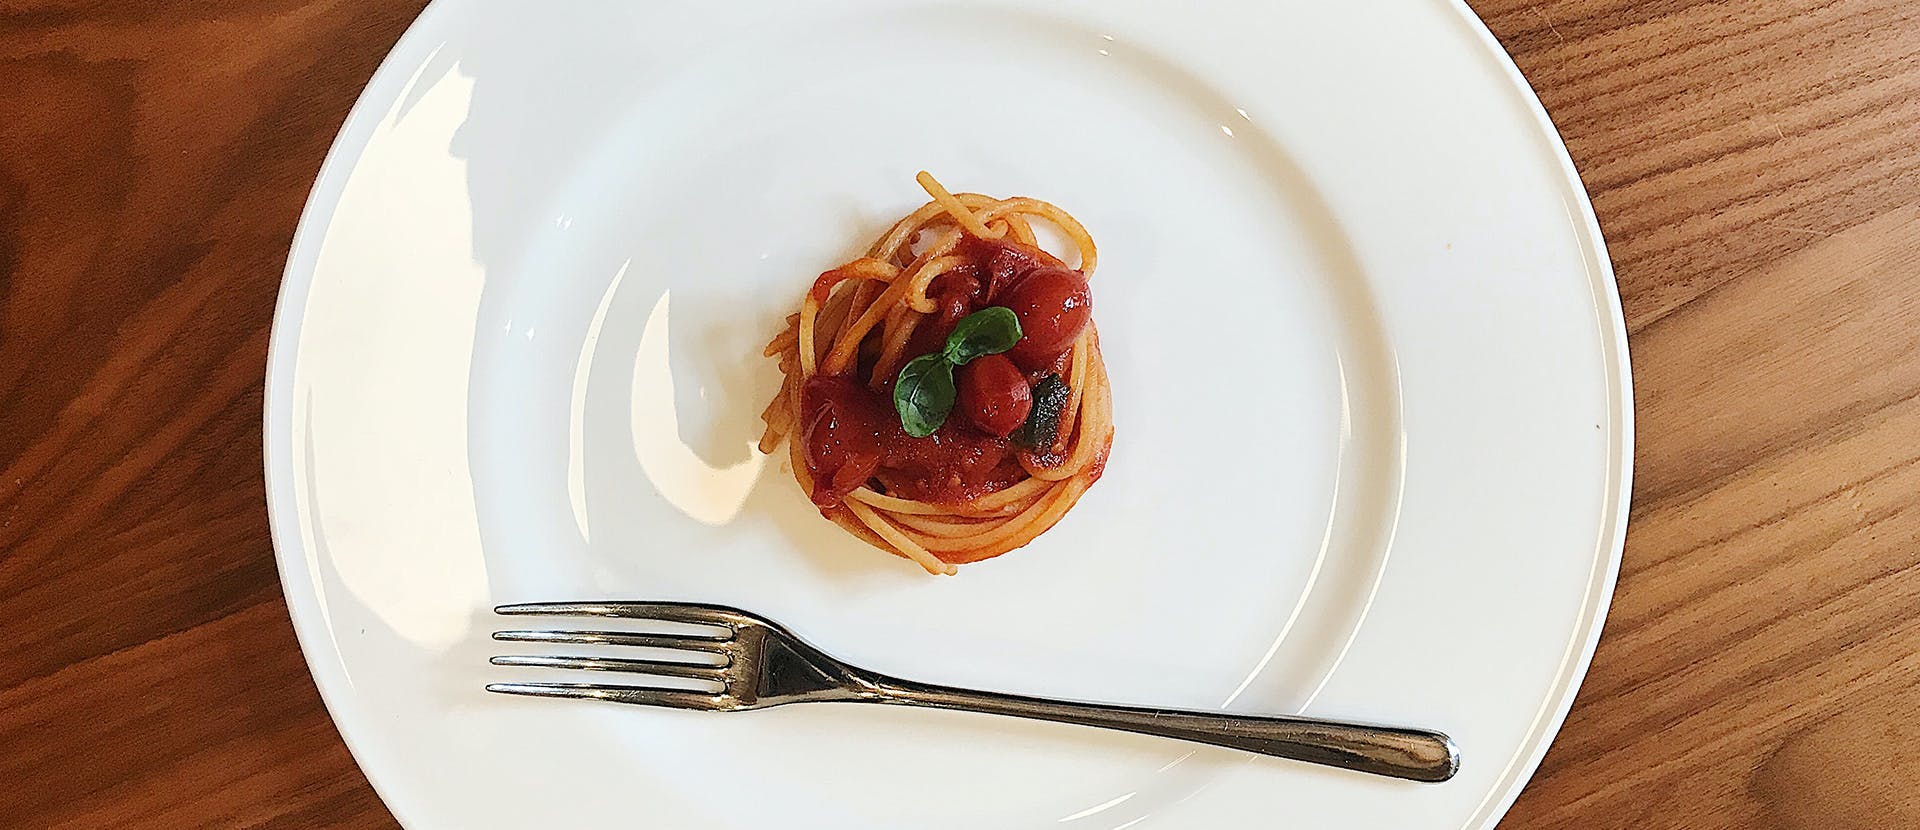 food pasta spaghetti meal dish